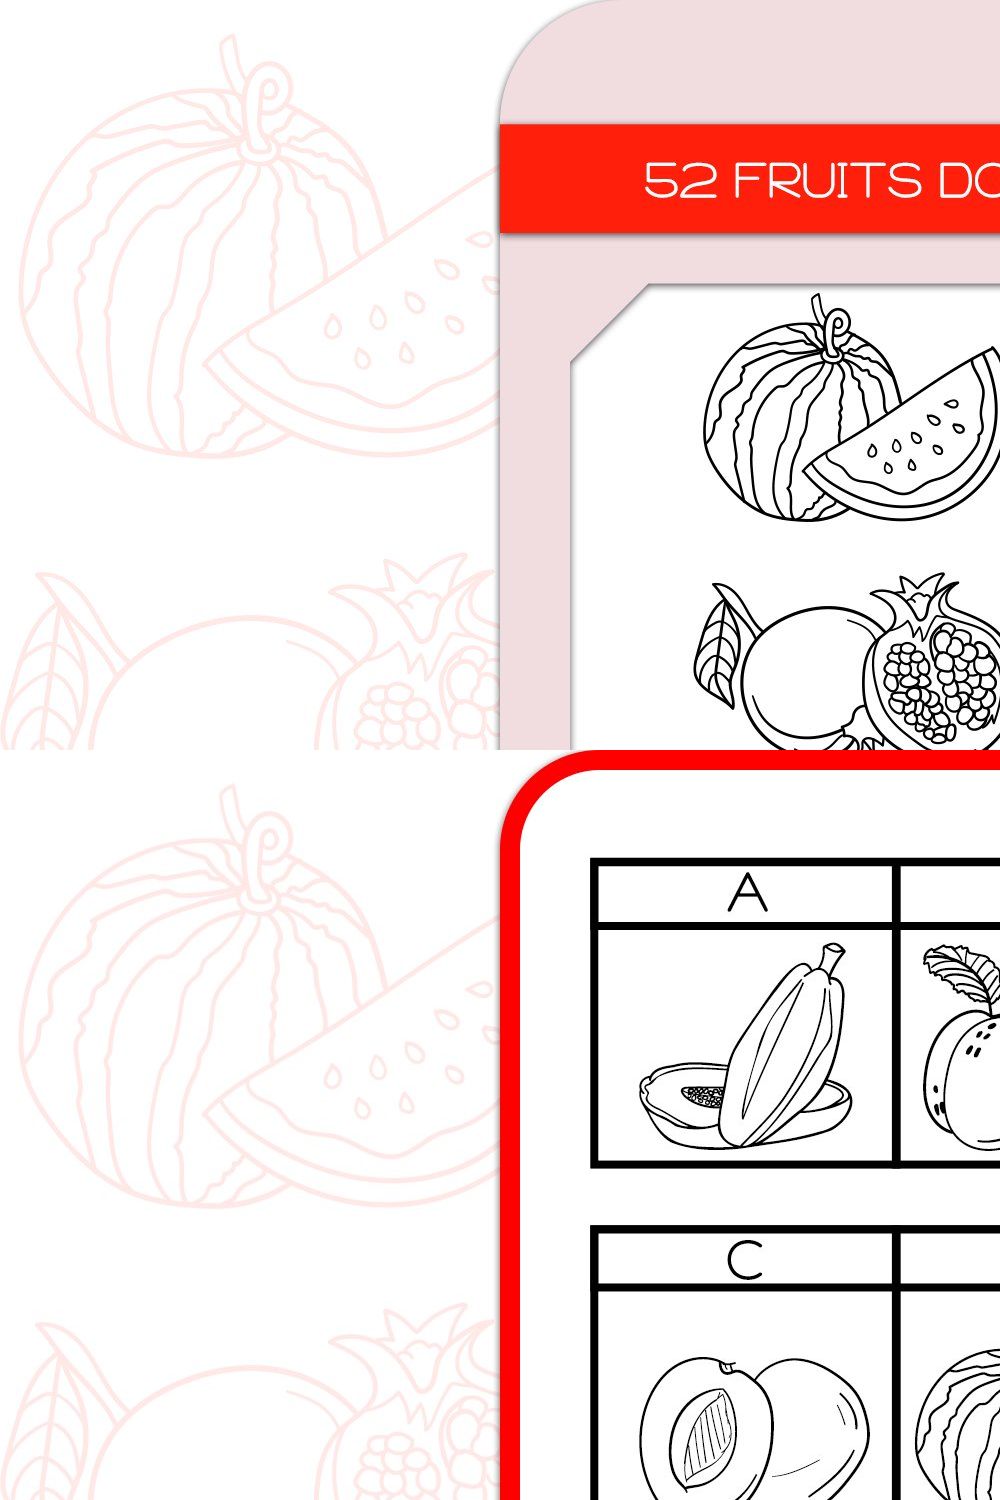 Fruits Doodles - Dingbats Font pinterest preview image.